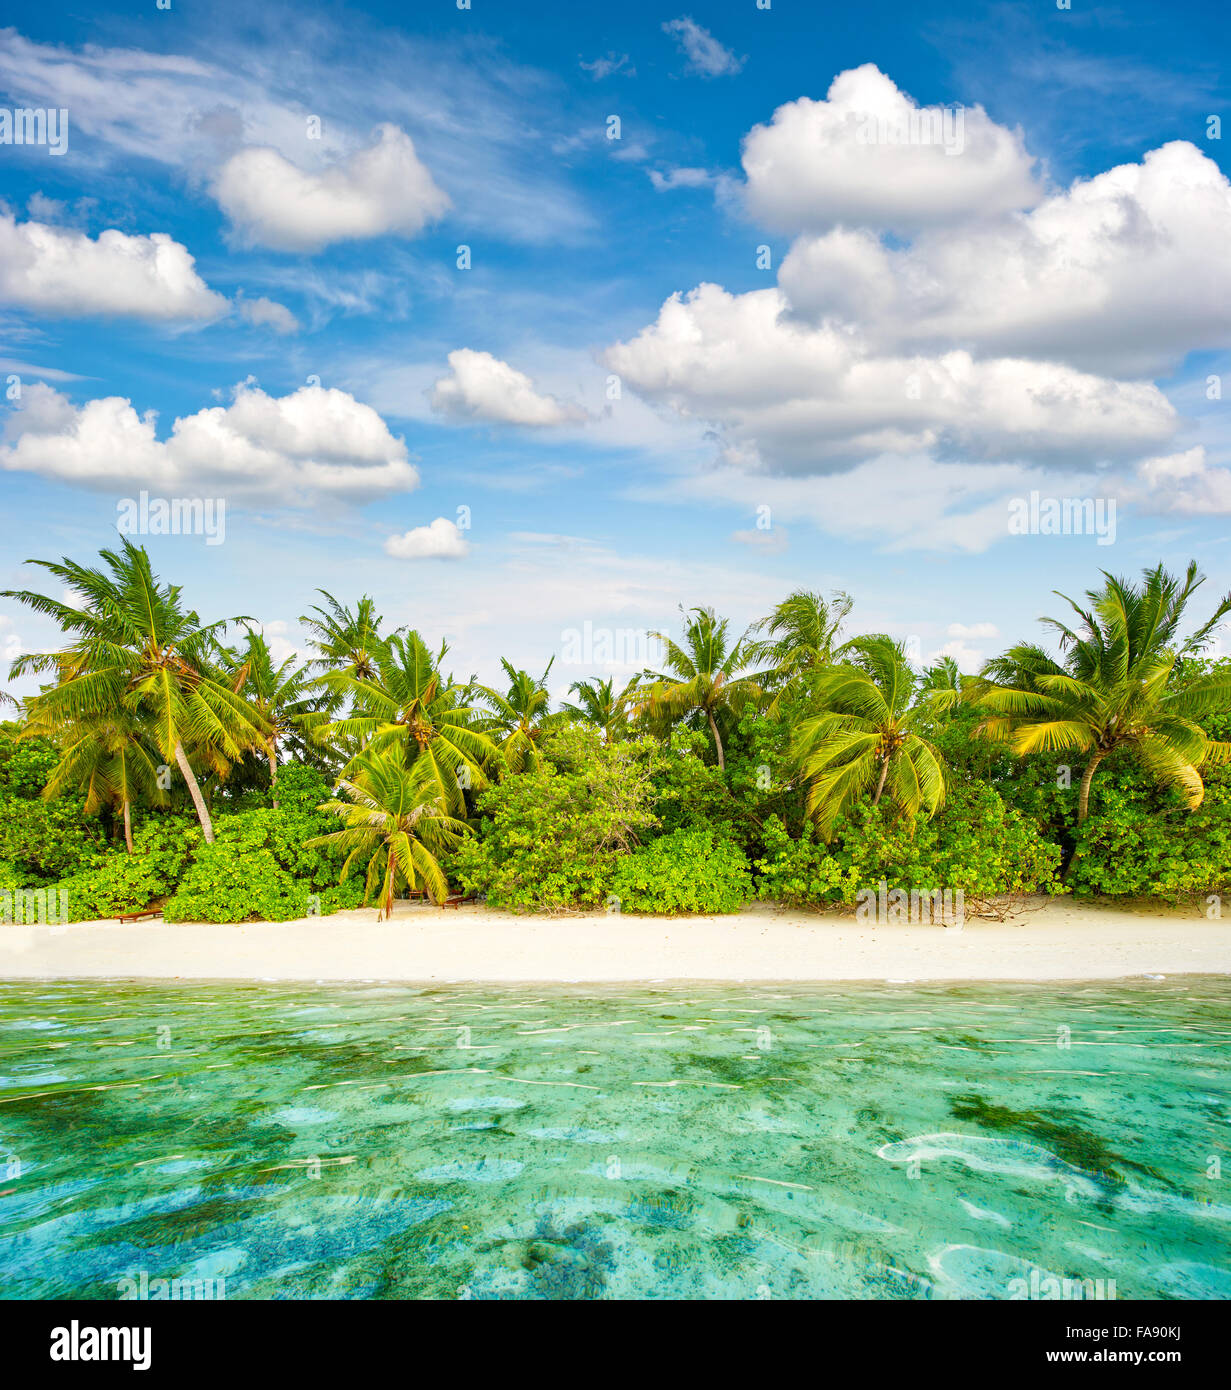 Plage de sable fin. Palmiers. Ciel nuageux Ciel bleu. Paysage de l'île tropicale Banque D'Images